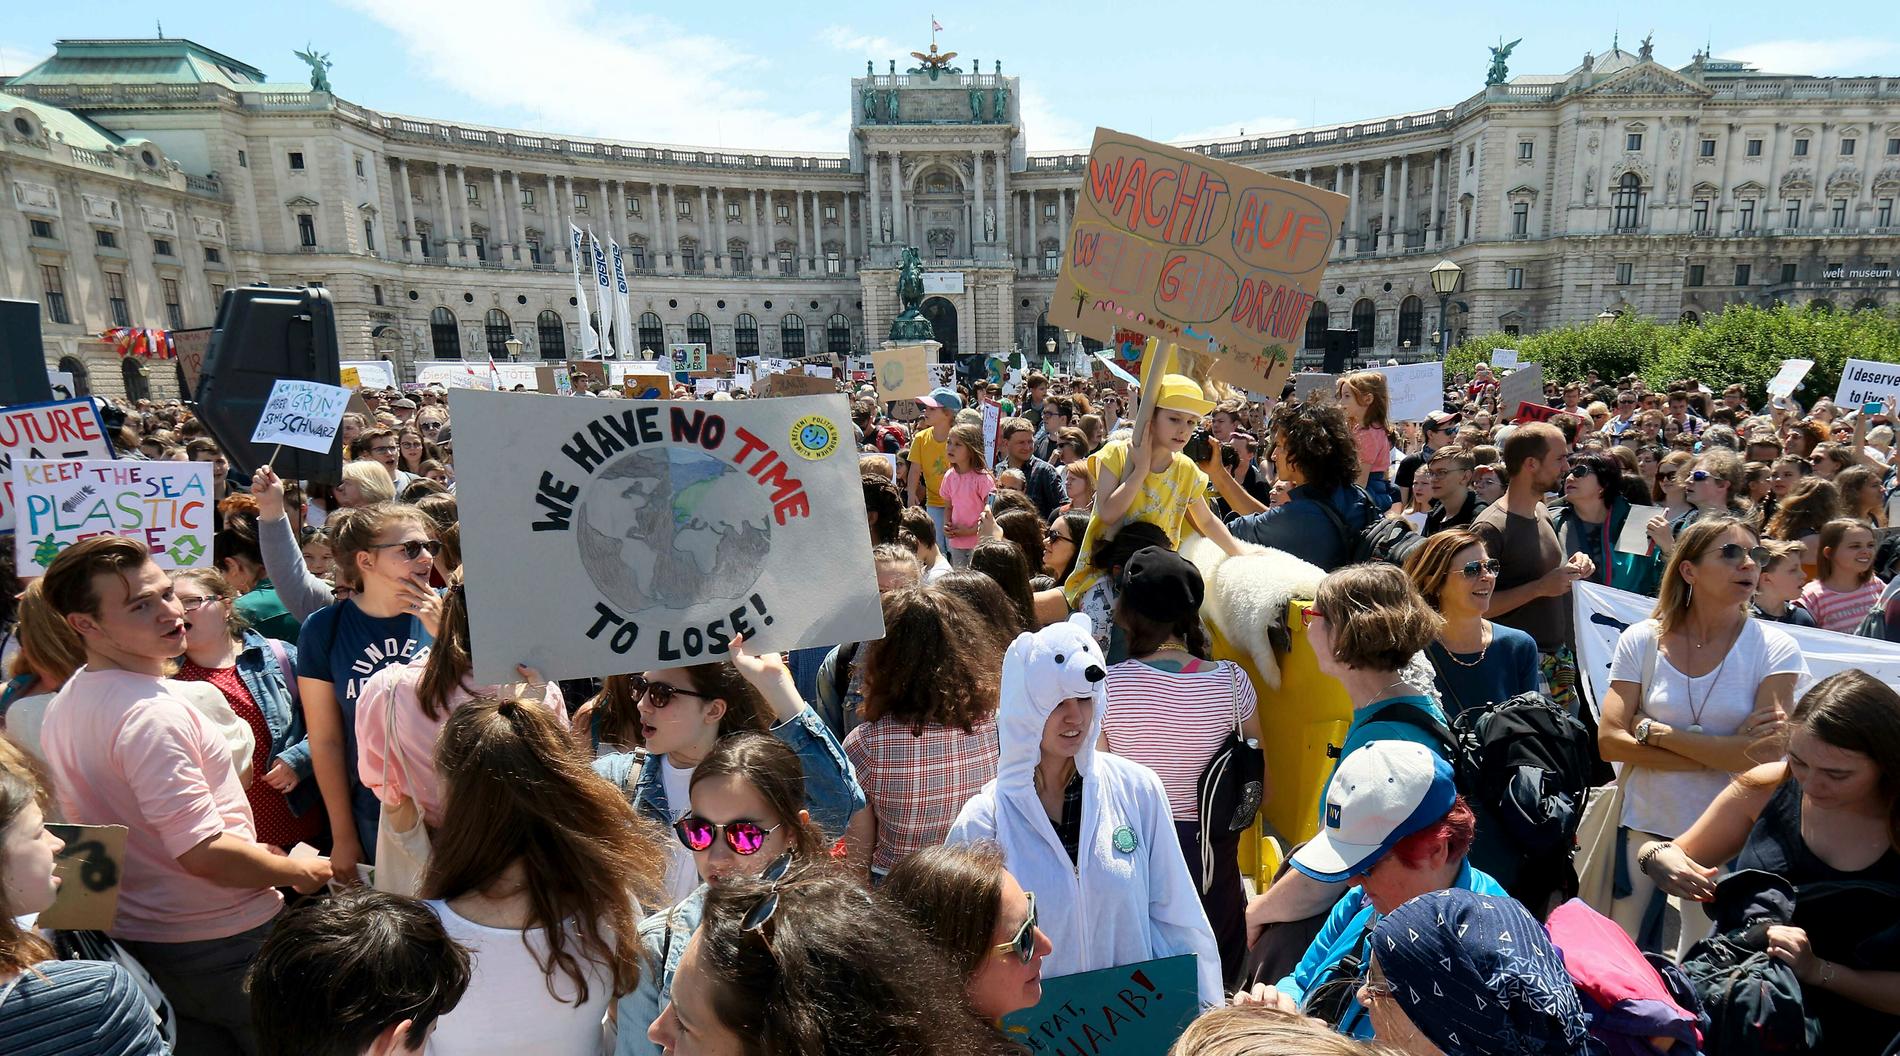 Skolstrejk för klimatet arrangerad av rörelsen Fridays for future i slutet av maj i Wien, Österrike. Arkivbild.